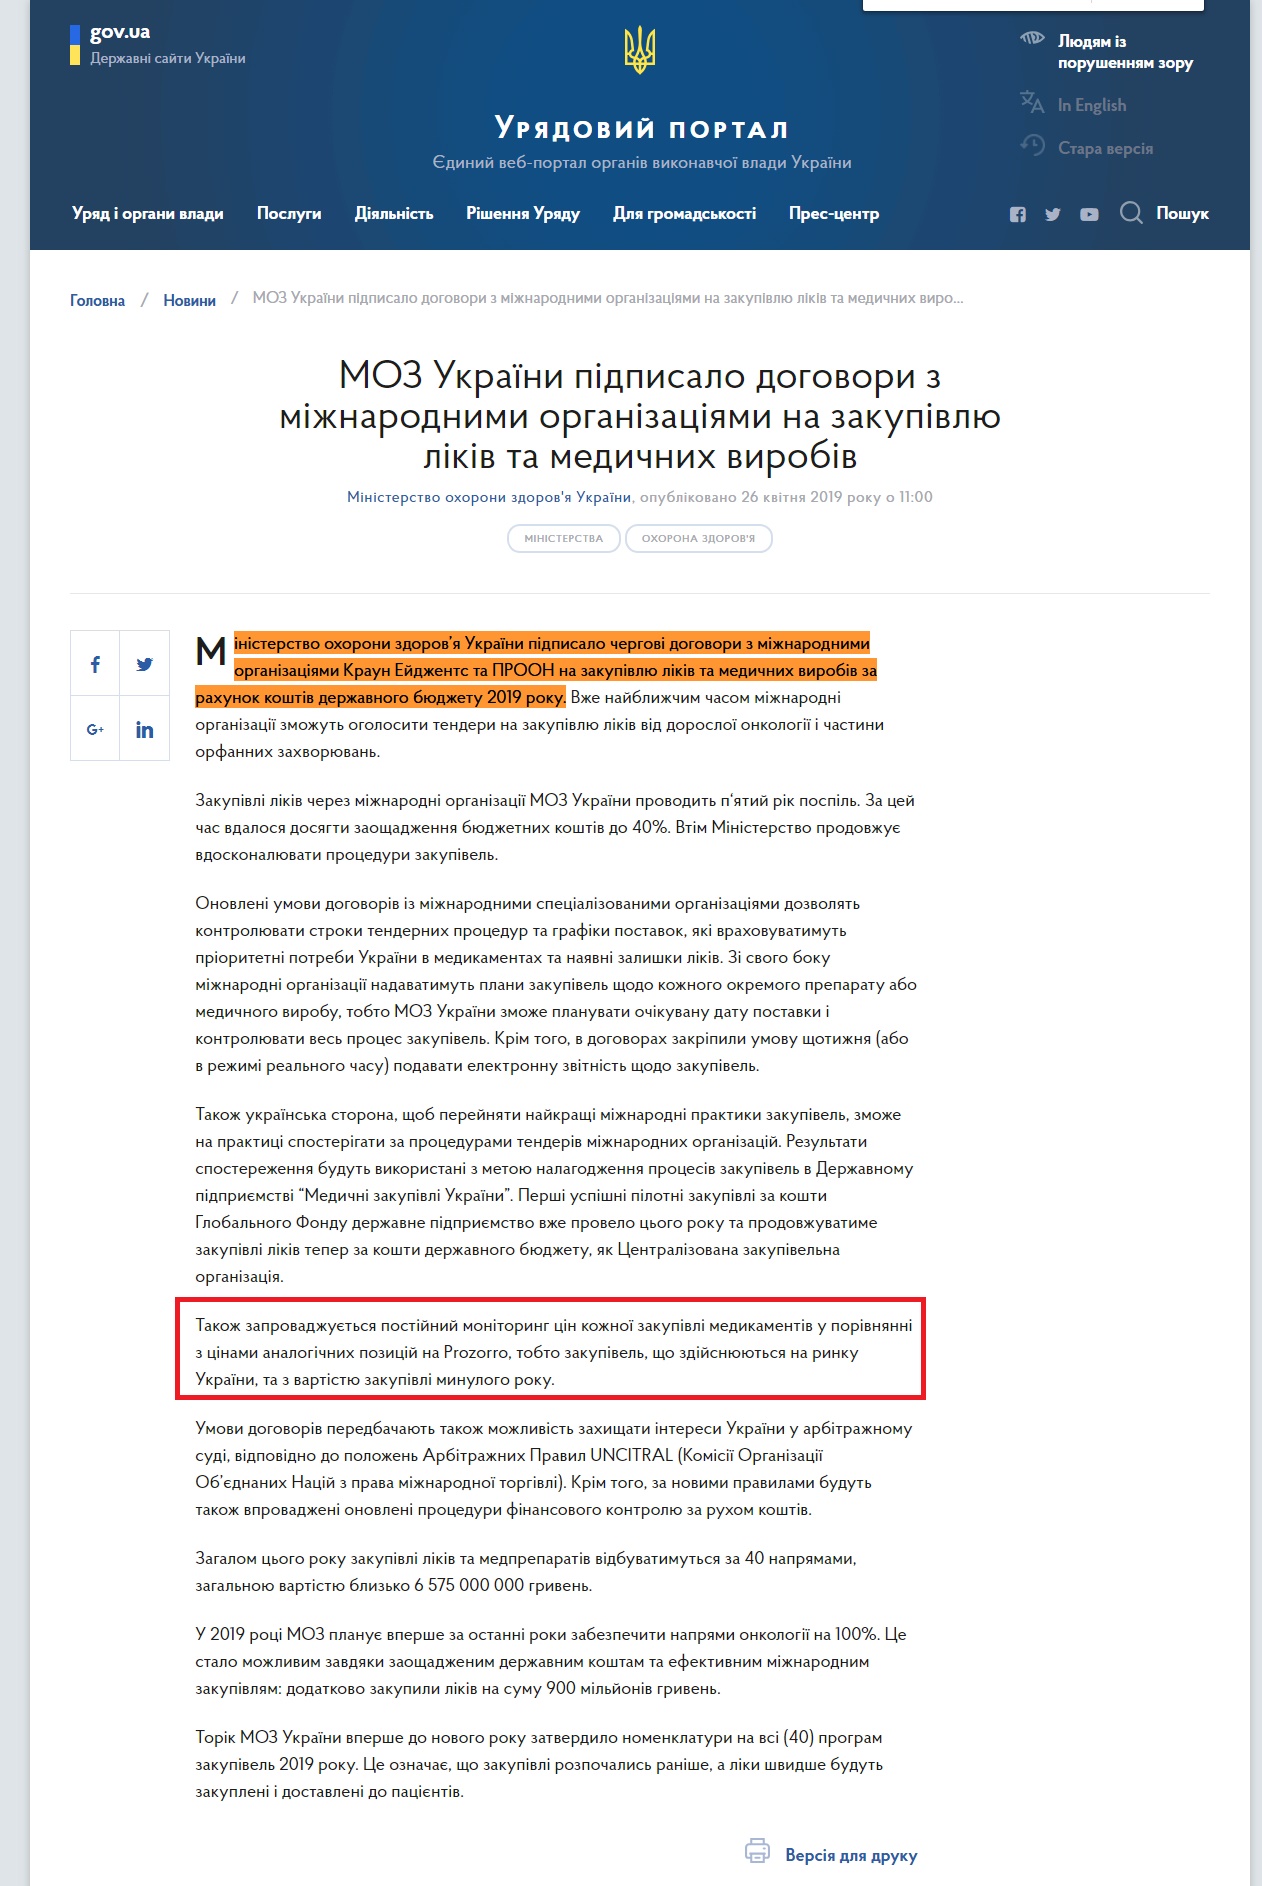 https://www.kmu.gov.ua/ua/news/moz-ukrayini-pidpisalo-dogovori-z-mizhnarodnimi-organizaciyami-na-zakupivlyu-likiv-ta-medichnih-virobiv